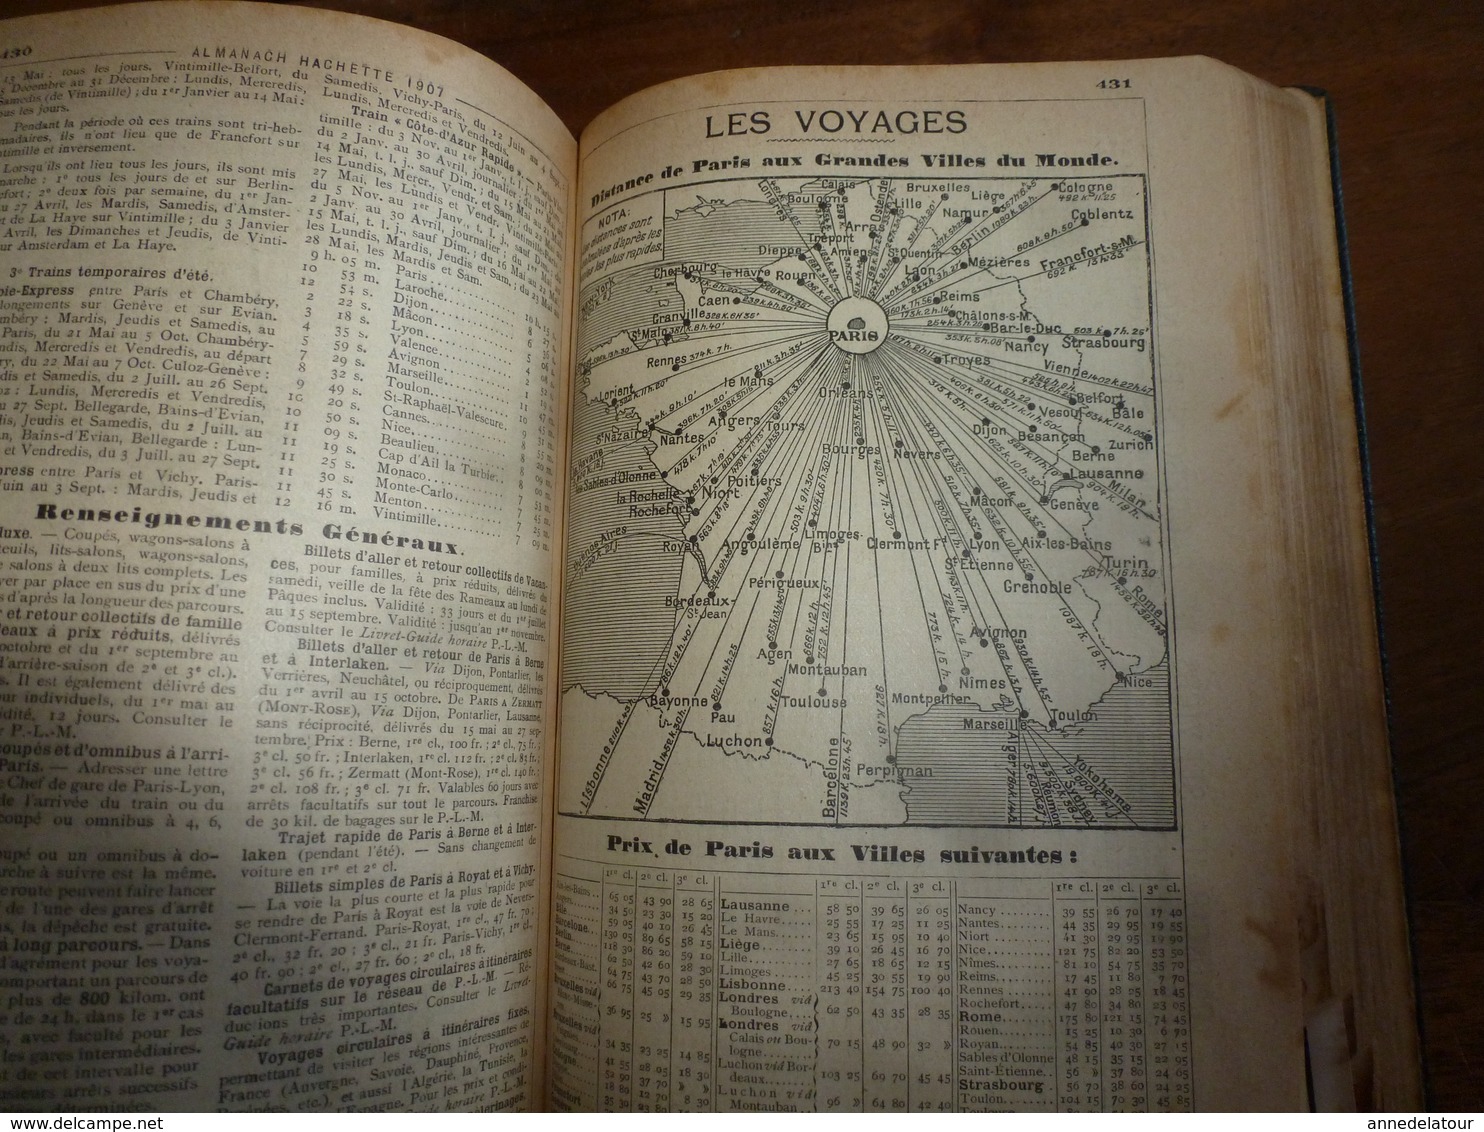 1907 Naufrage du HILDA à St-Malo;Benjamin Rabier;etc(éd. luxe) ALMANACH HACHETTE (Encycl. Populaire de la Vie Pratique);